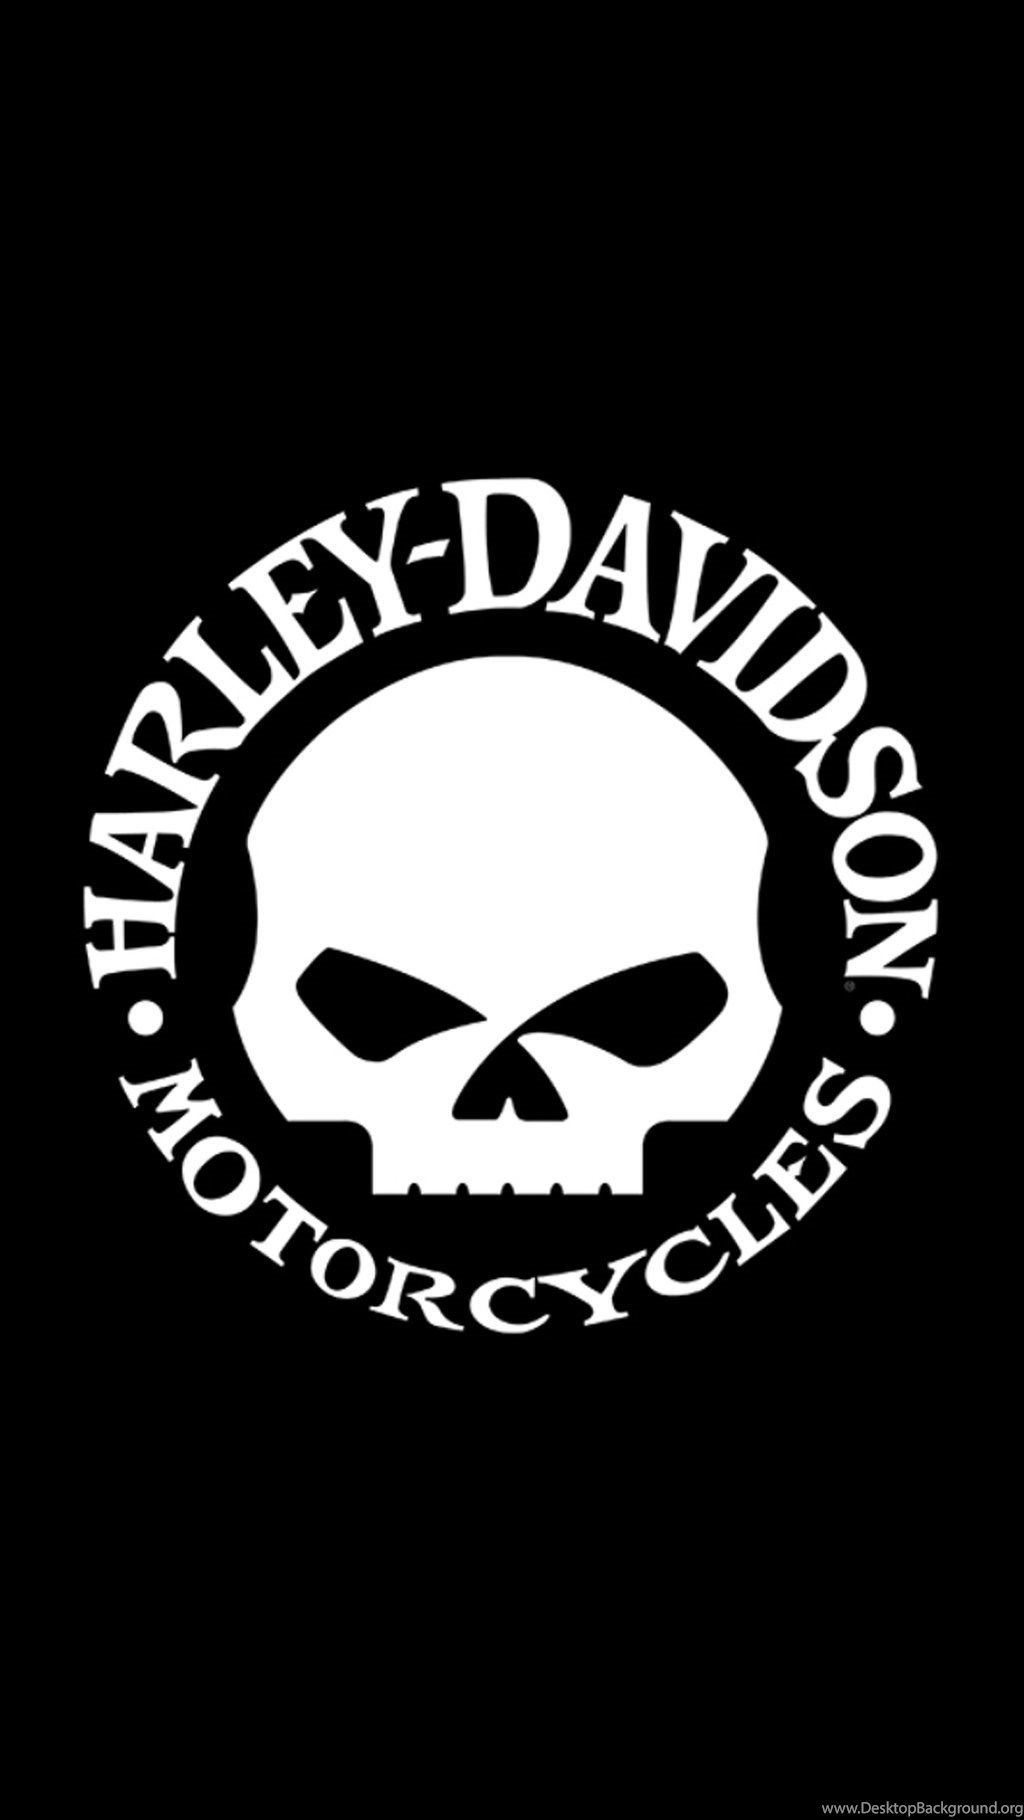 Harley Davidson Wallpapers  Top 35 Best Harley Davidson Backgrounds  Download